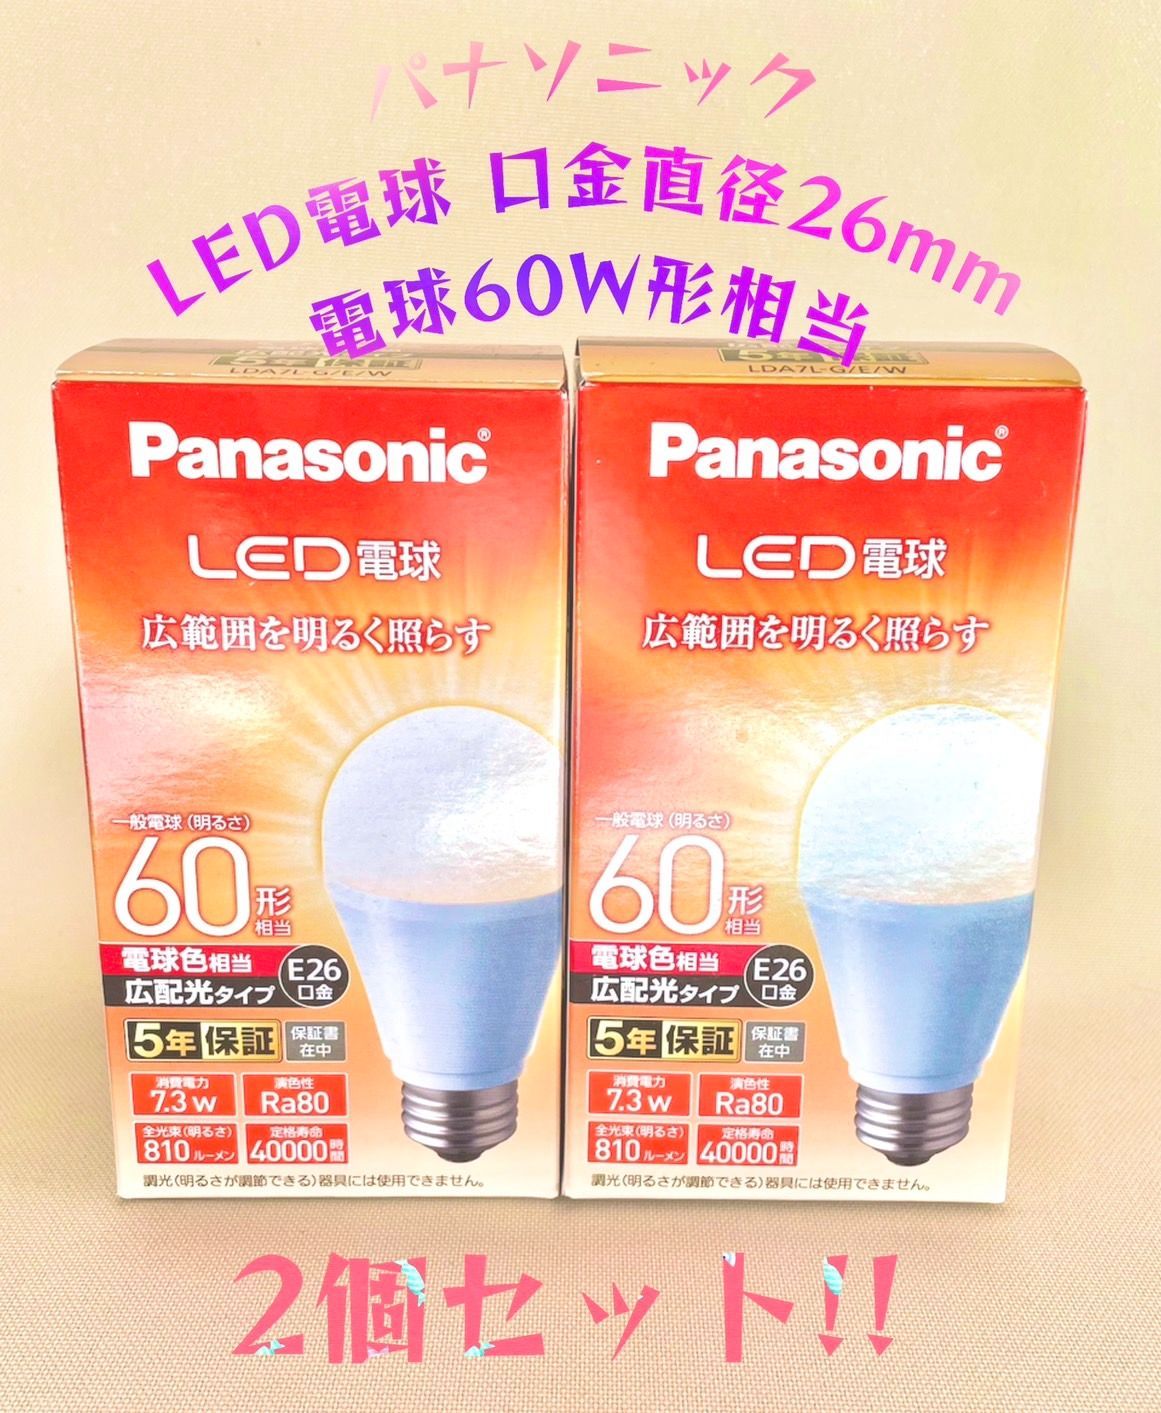 パナソニック LED電球 7.3W 電球色相当 LDA7LGEW